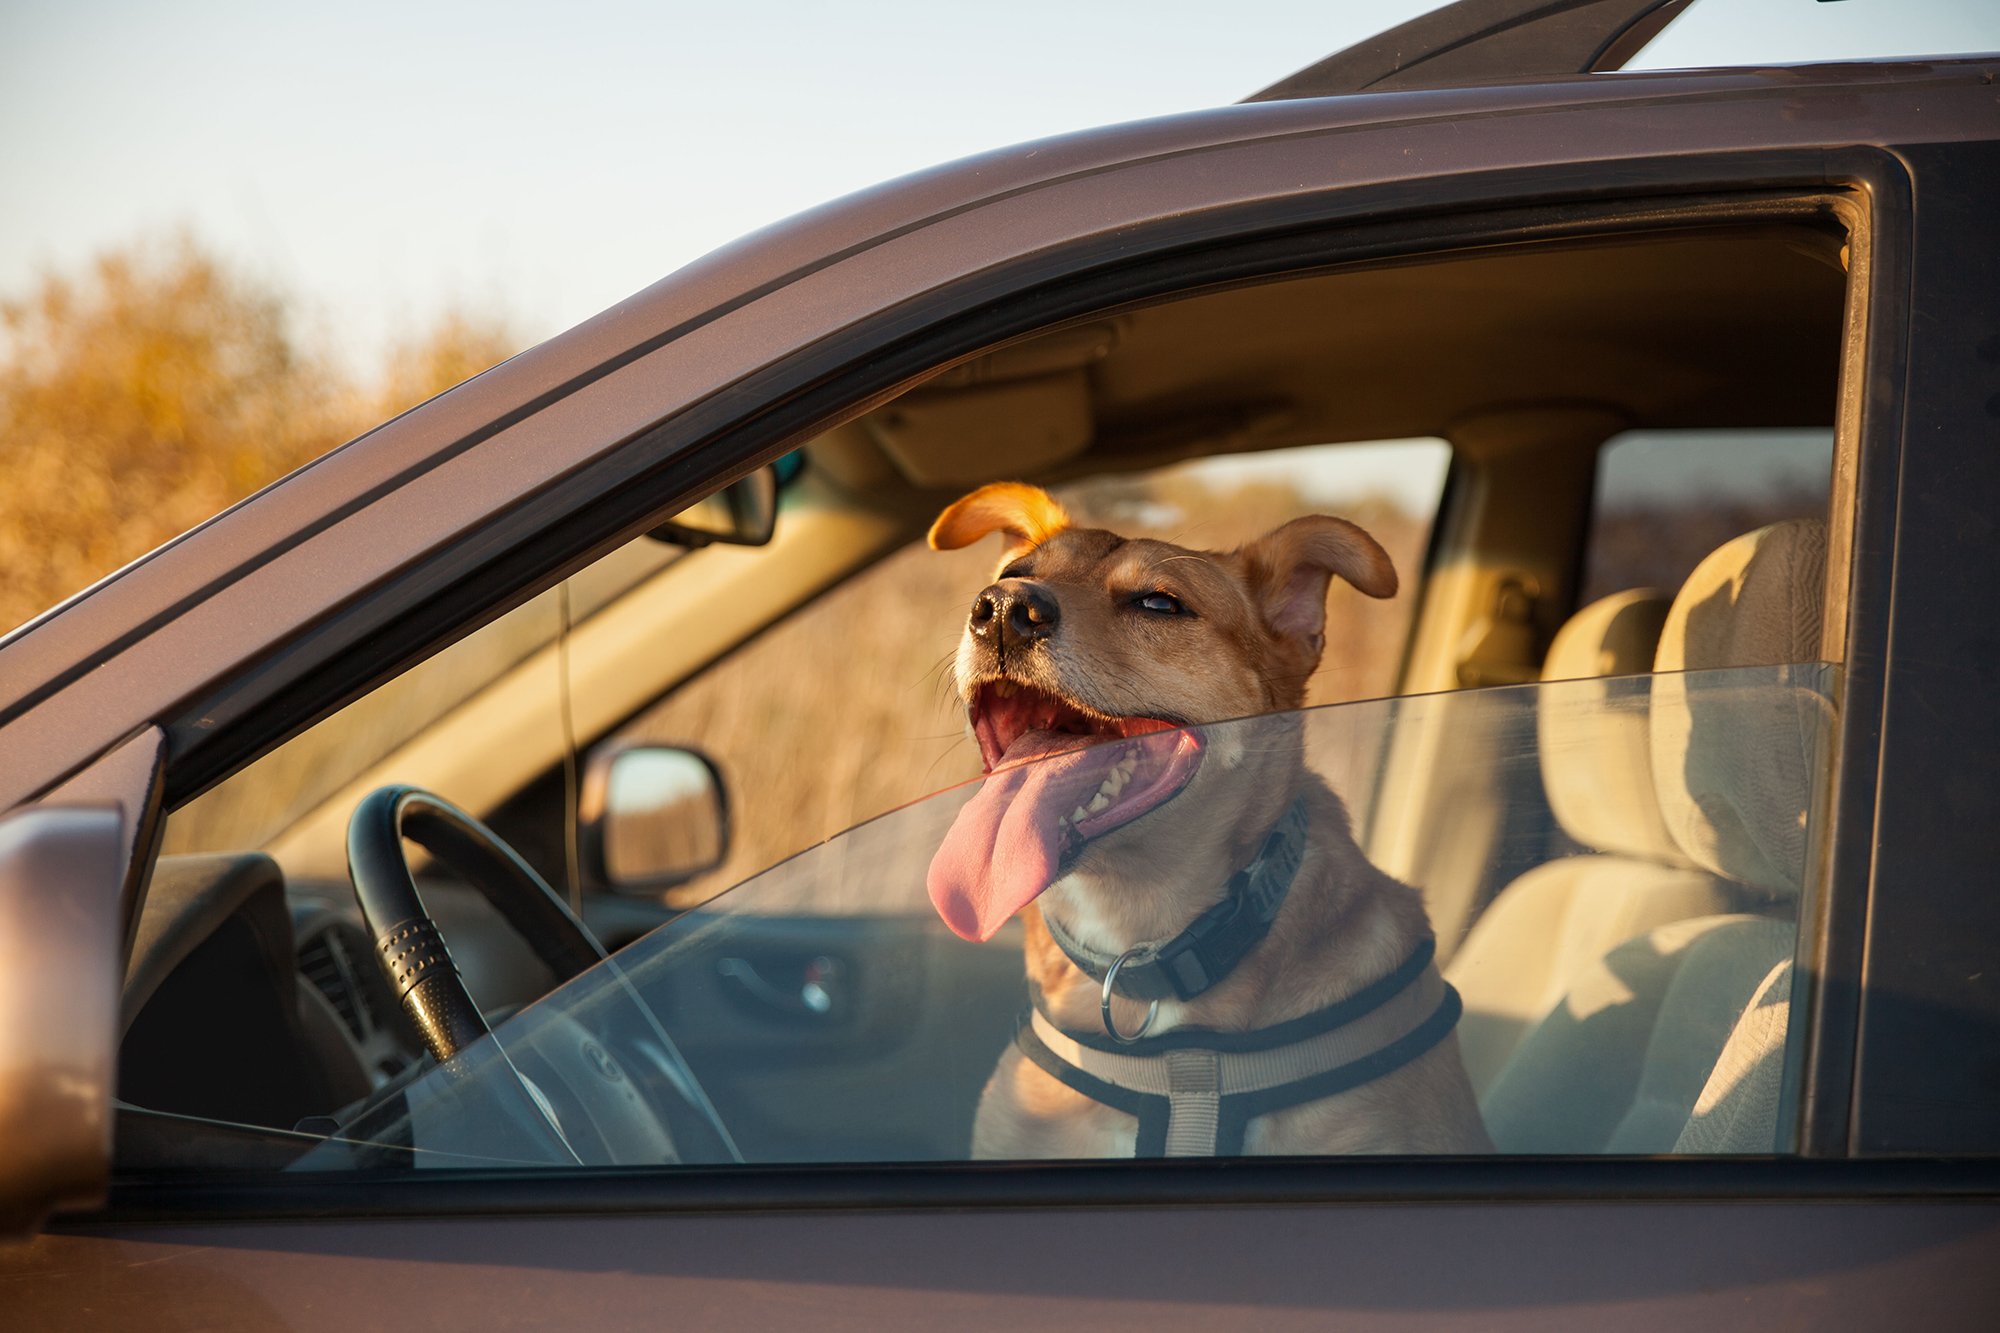 Dog in hot car